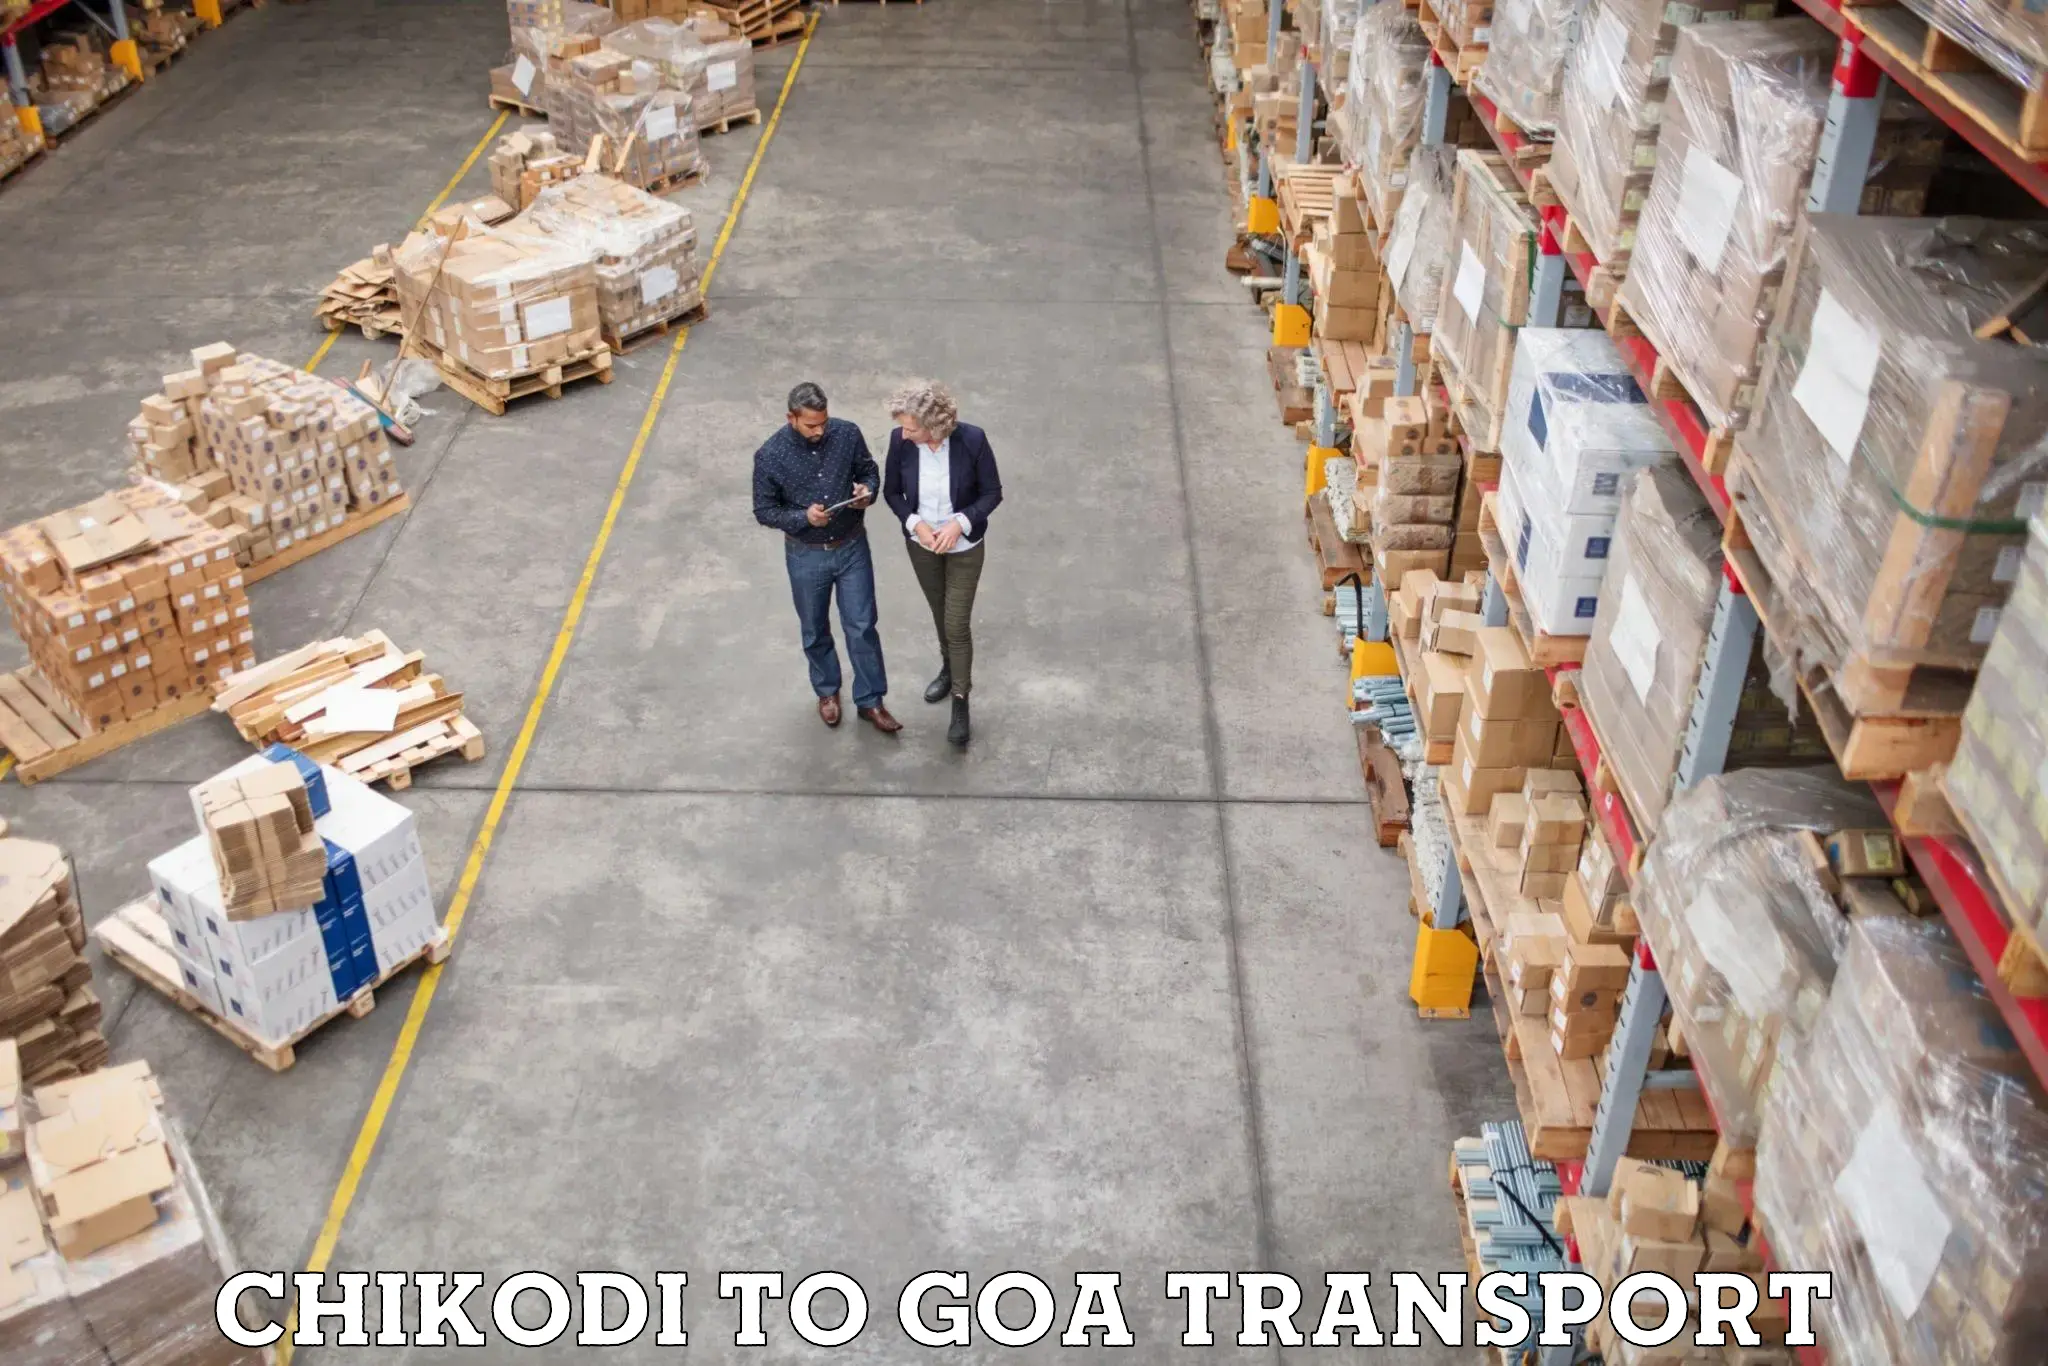 Nearest transport service Chikodi to IIT Goa